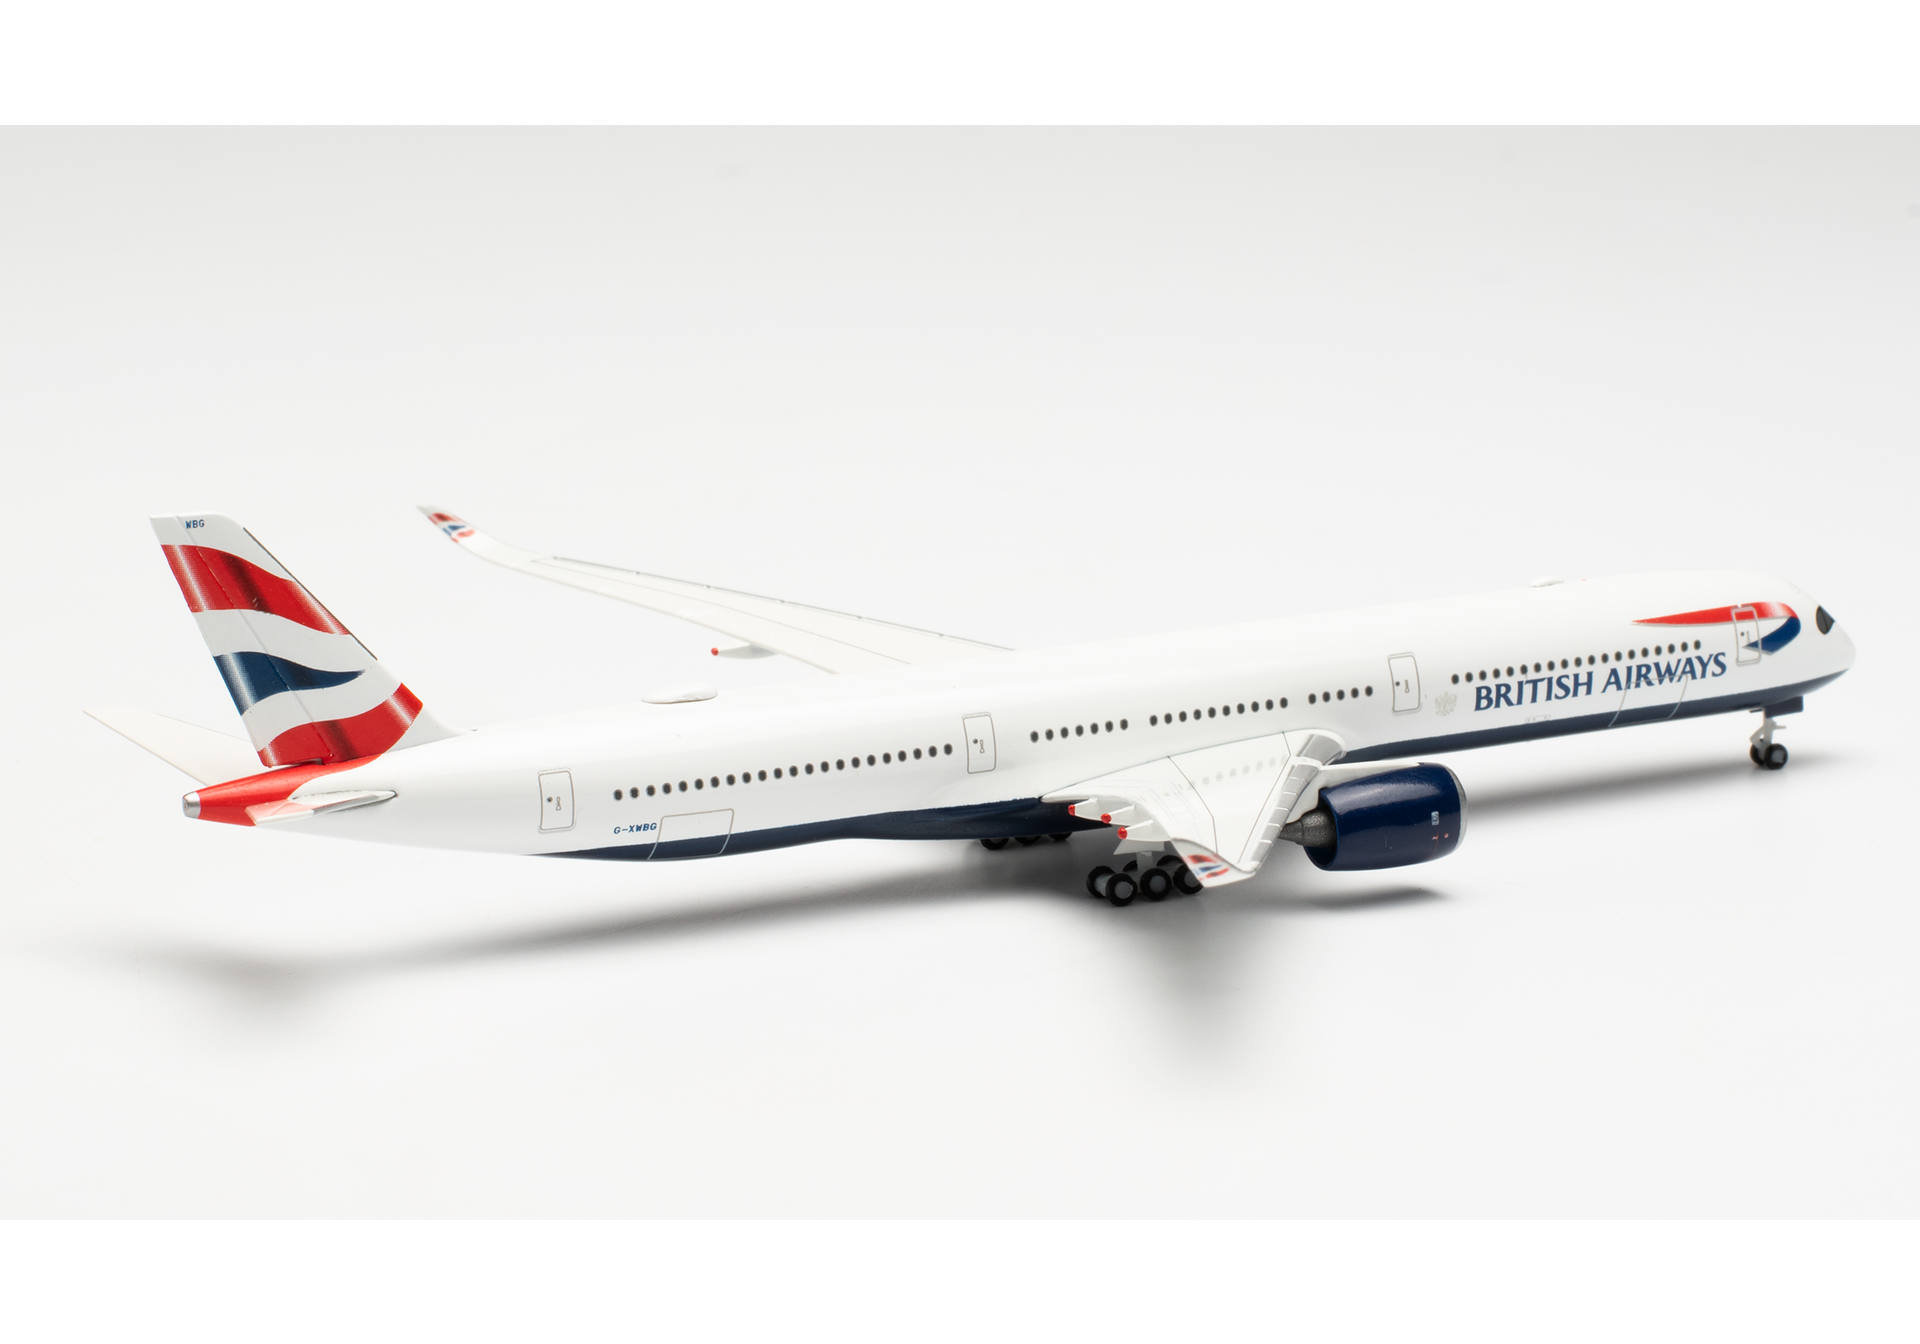   Airbus A350-1000 British Airways - G-XWBG, 1:500, 533126-002.  # 2 hobbyplus.ru